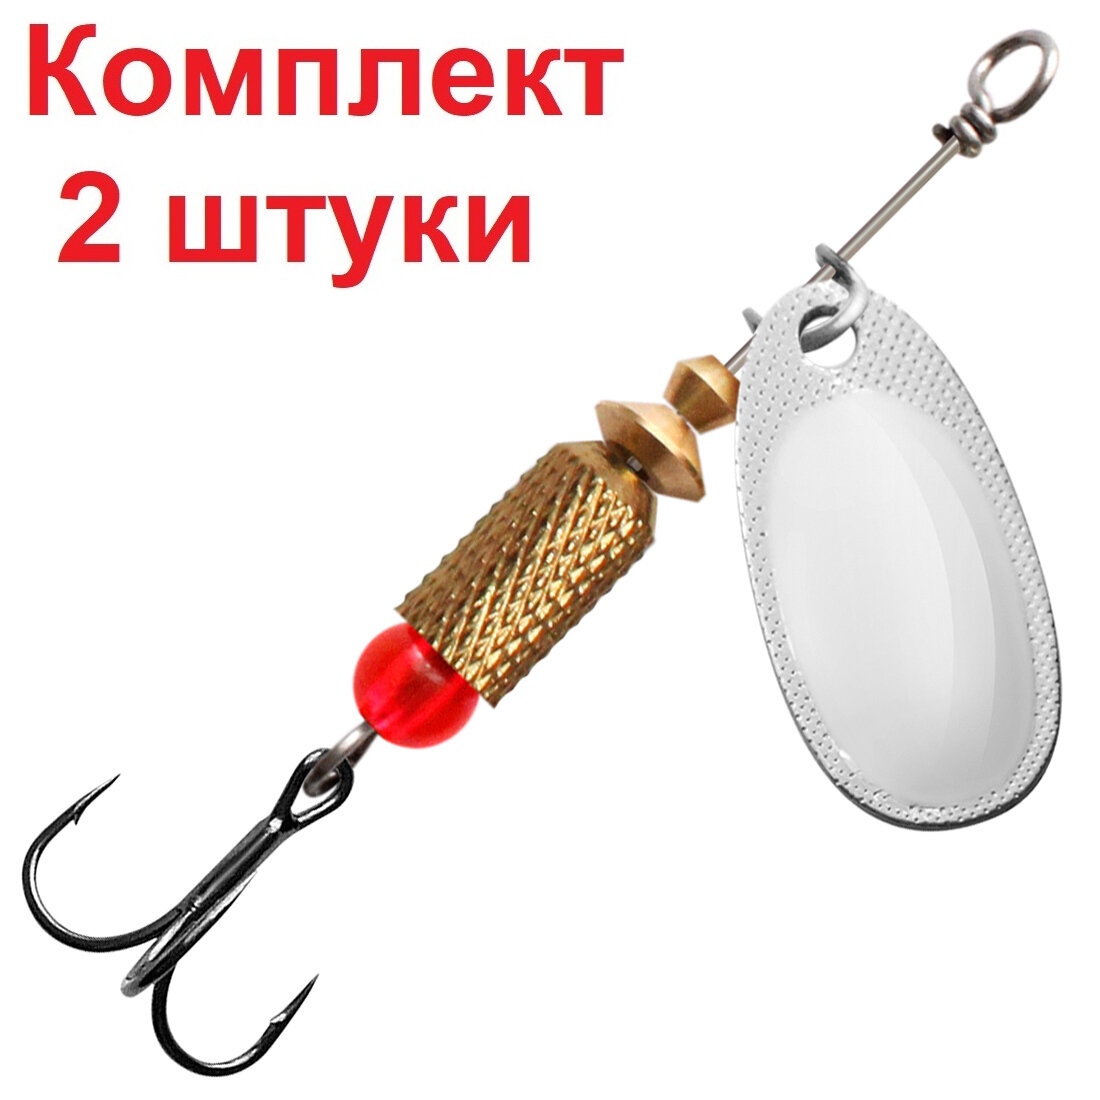 Блесна-вертушка для рыбалки AQUA ESTI ROCKET-2 60g серебро 1 штука